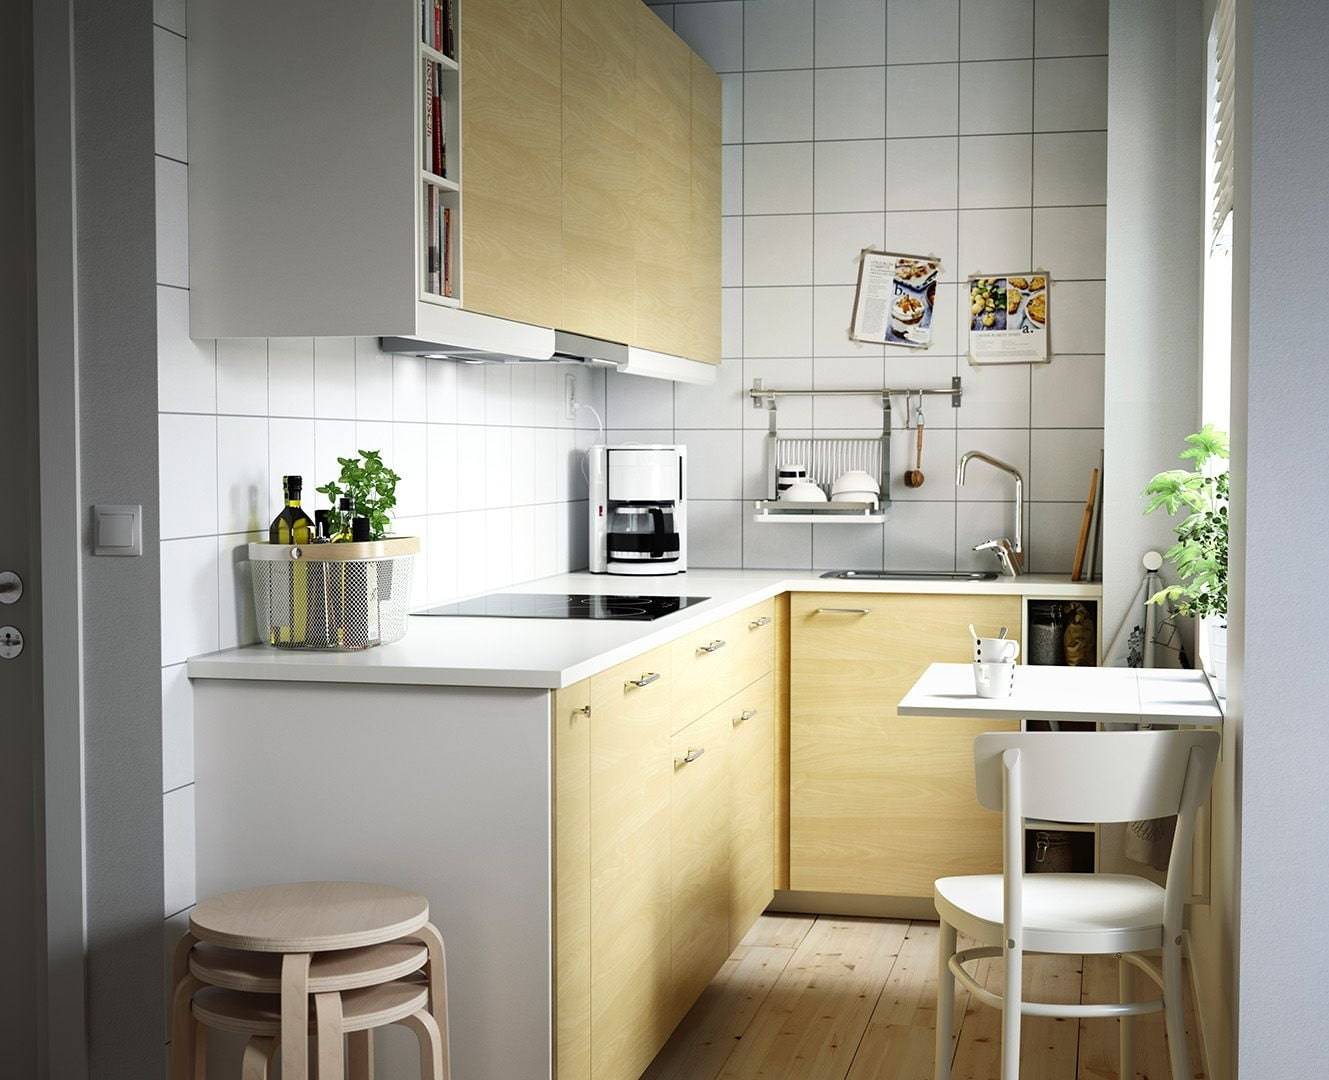 Дизайн кухни маленькой площади в квартире в хрущевке фото